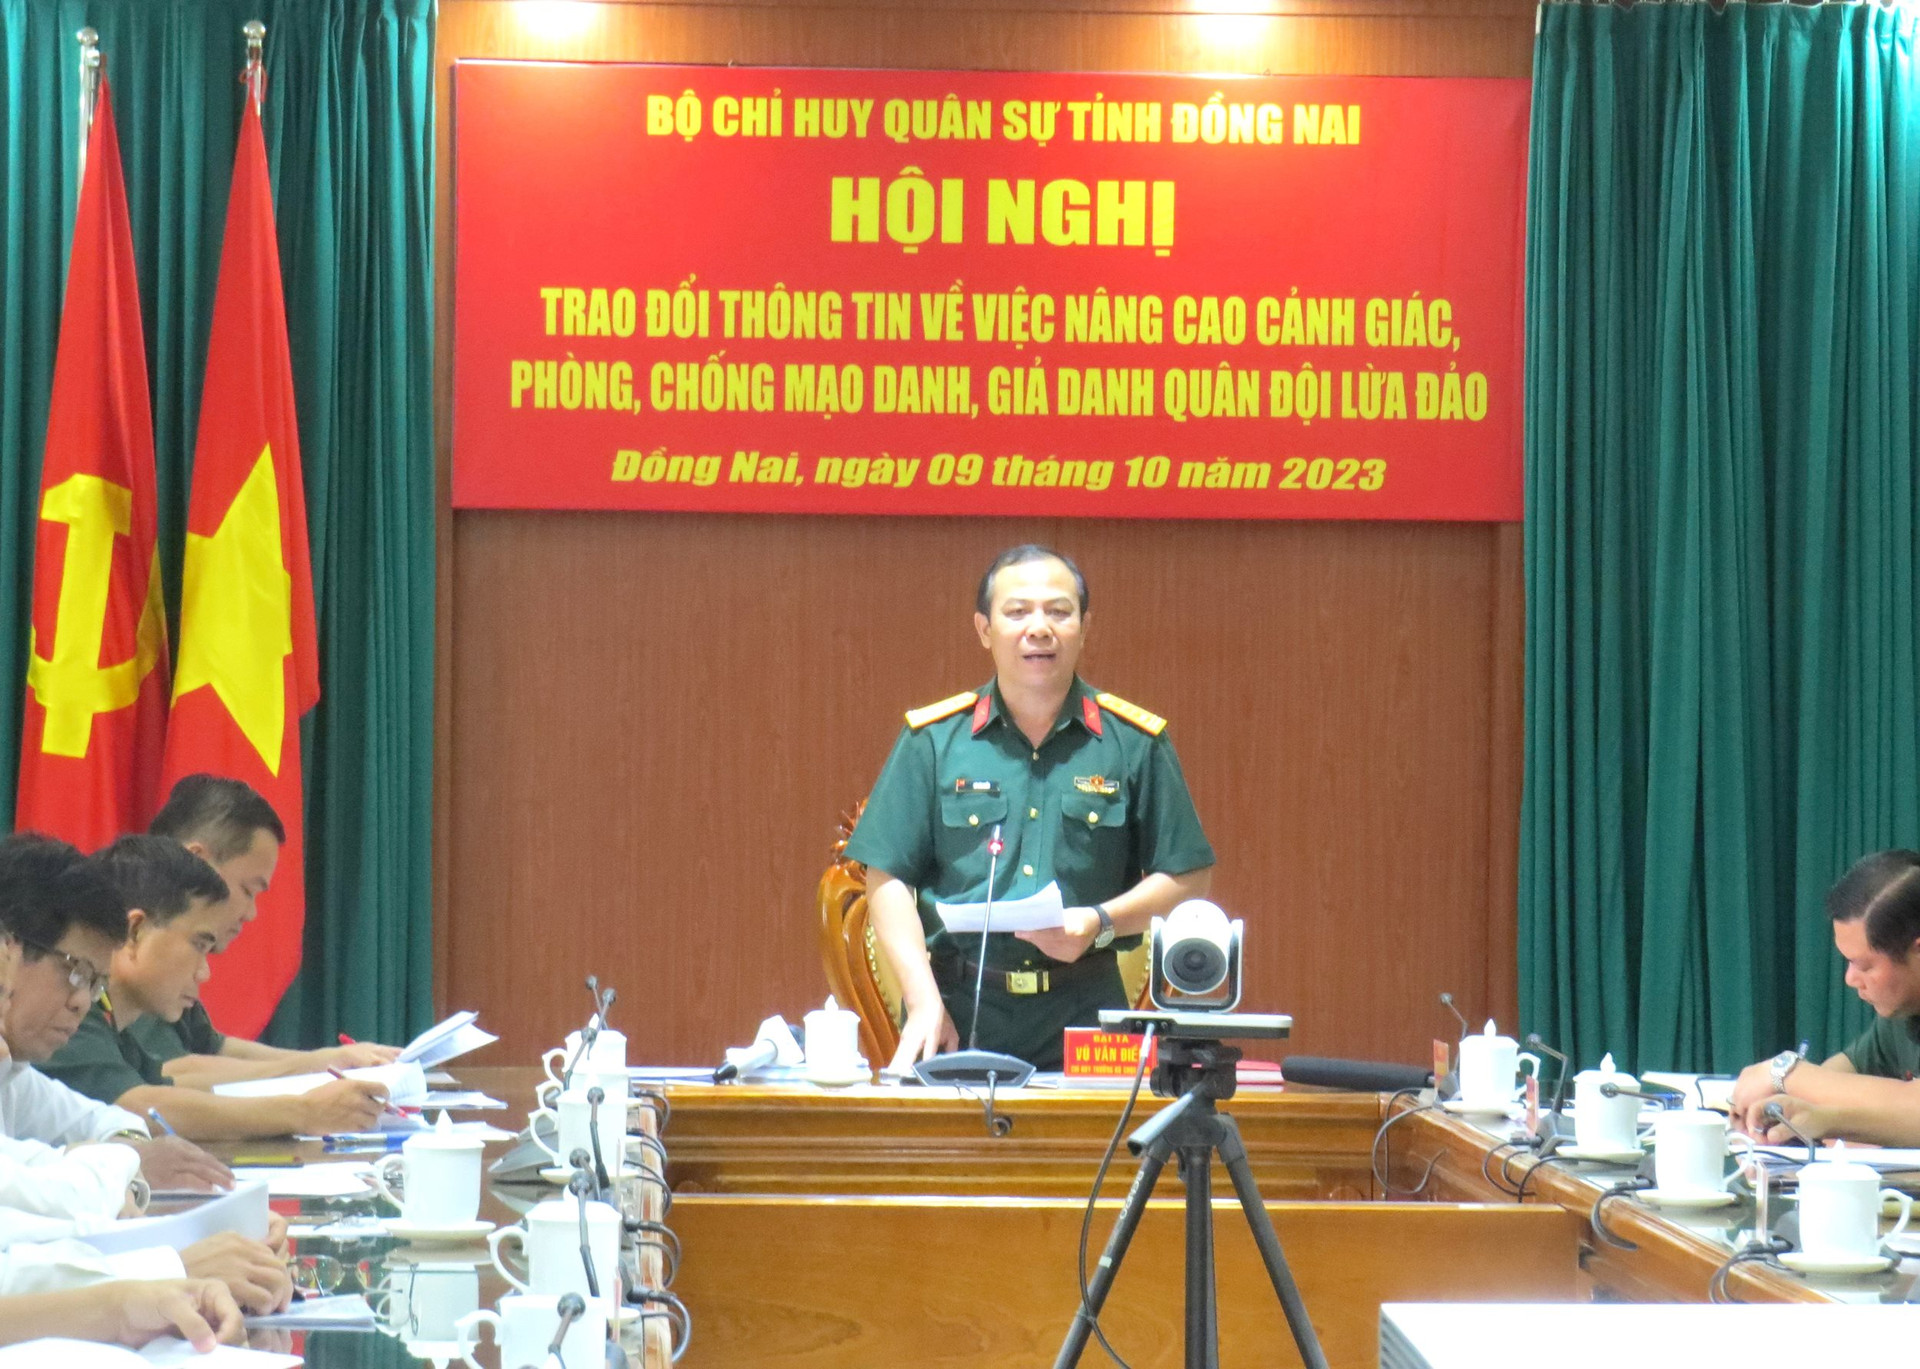 Đại tá Vũ Văn Điền - Chỉ huy trưởng Bộ Chỉ huy quân sự tỉnh Đồng Nai chủ trì Hội nghị